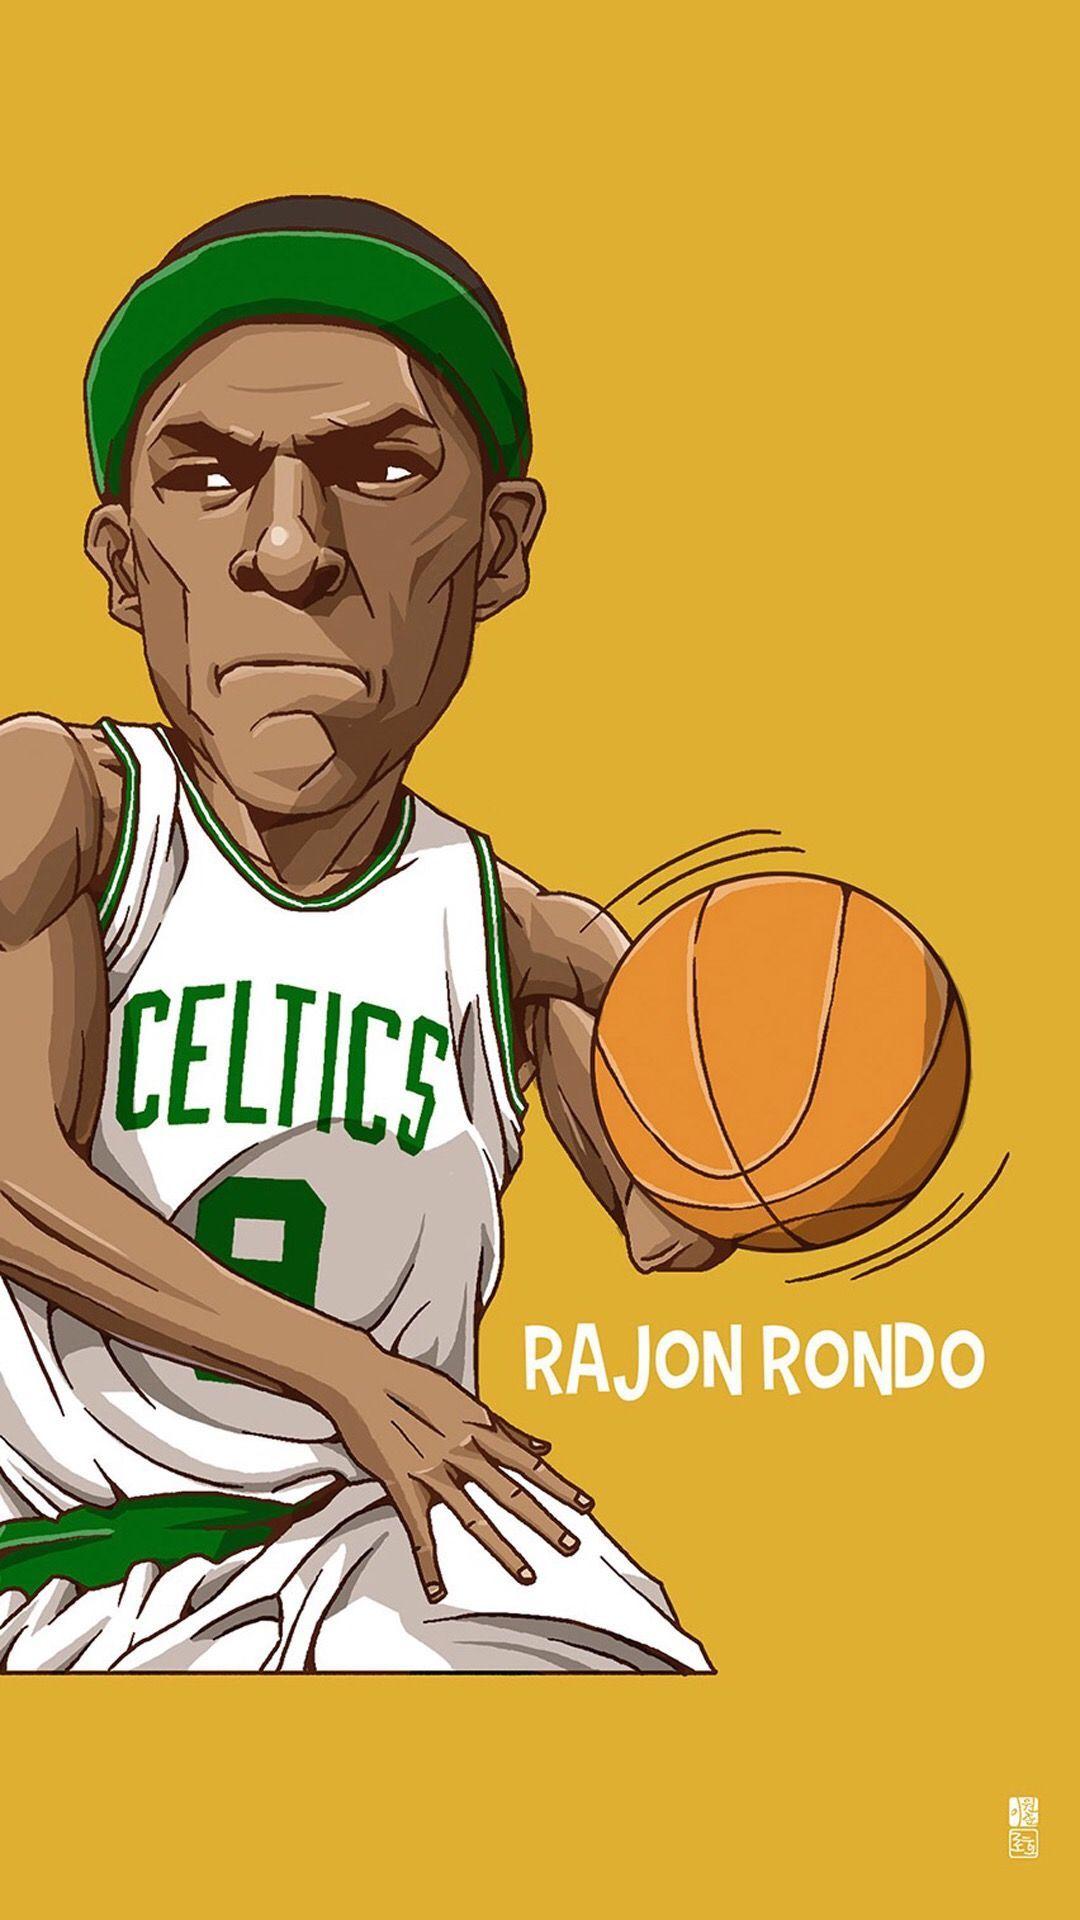 Basketball Cartoon Wallpaper Free Basketball Cartoon Background